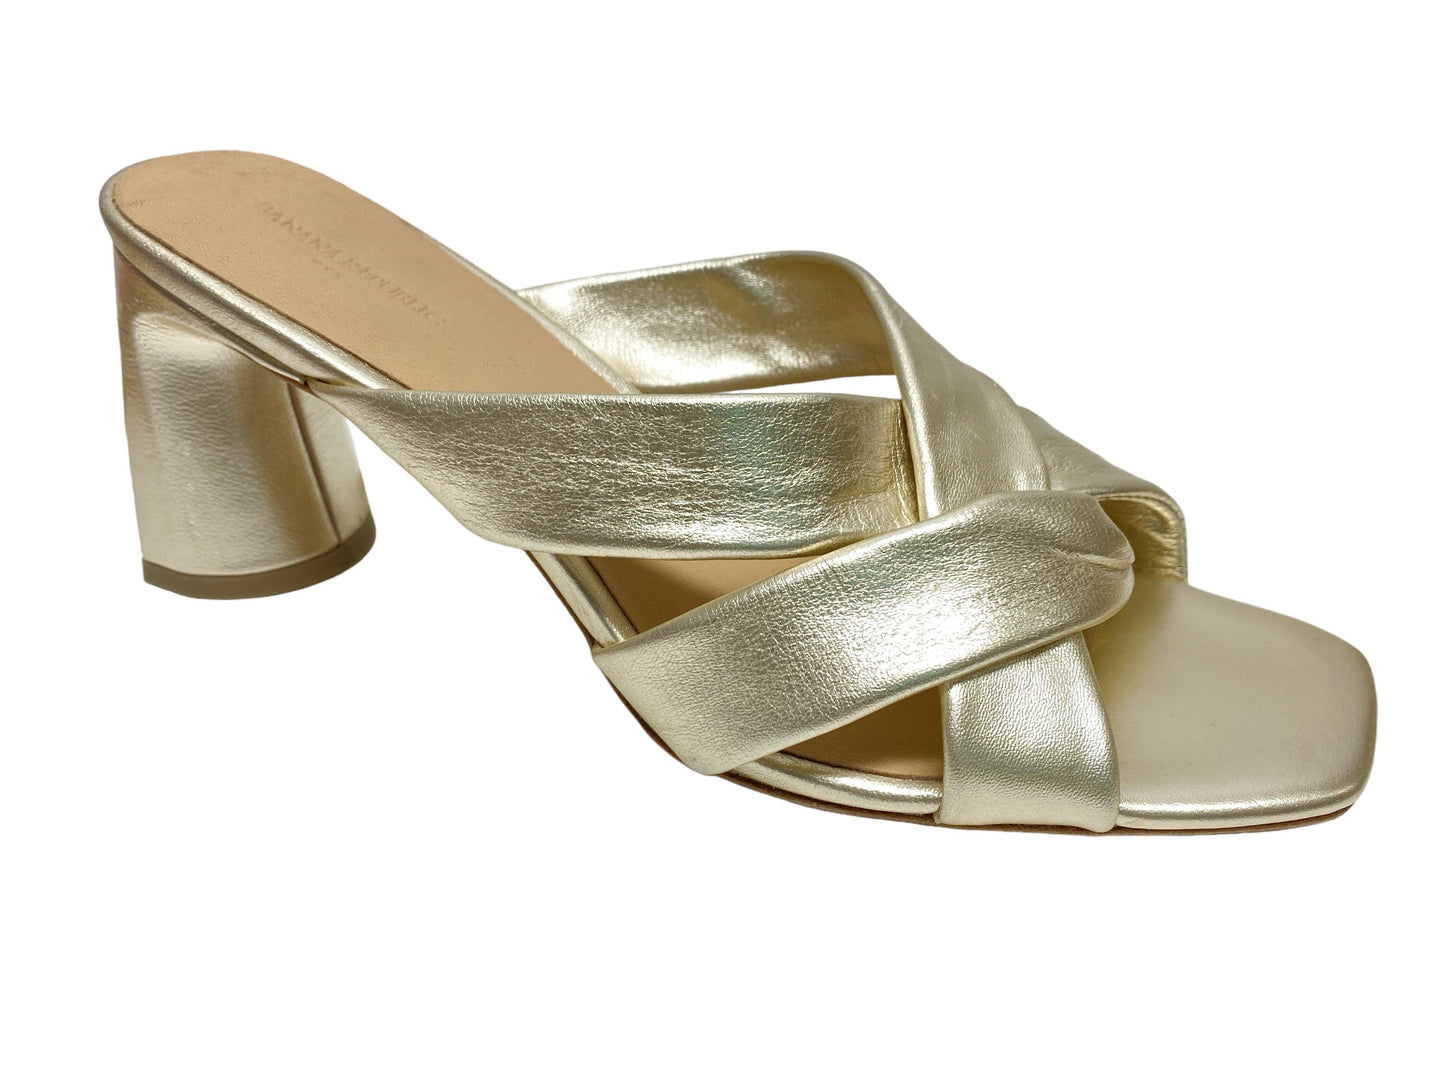 Gold Sandals Heels Block Banana Republic, Size 8.5